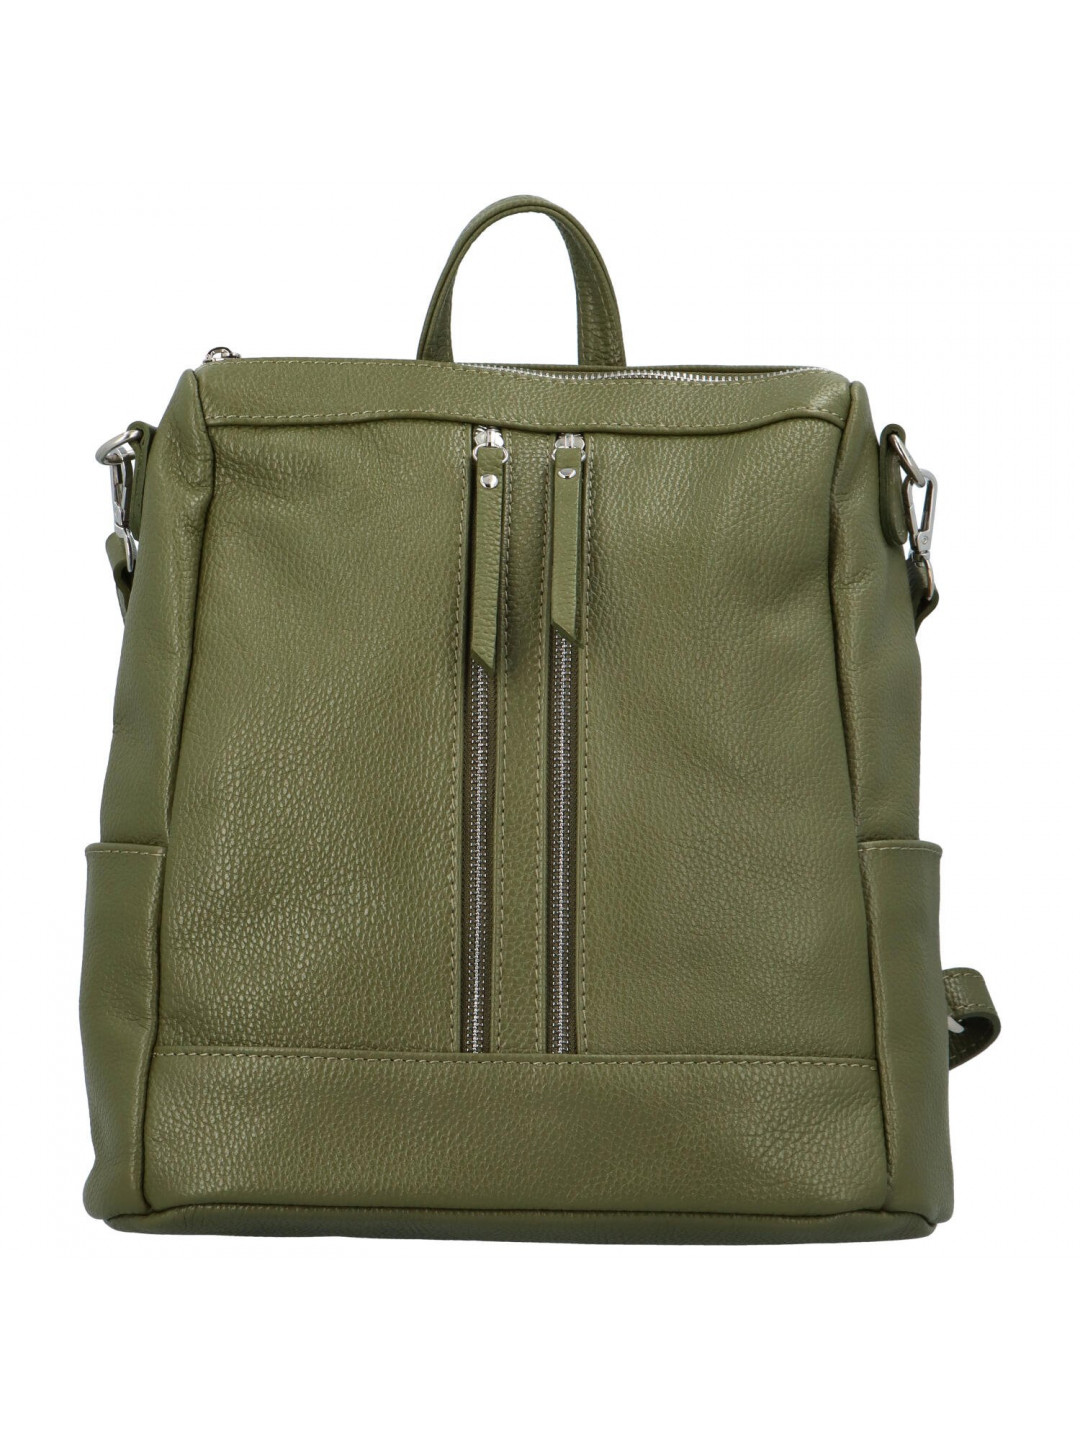 Dámský kožený batoh zelený – Delami Vera Pelle Randr